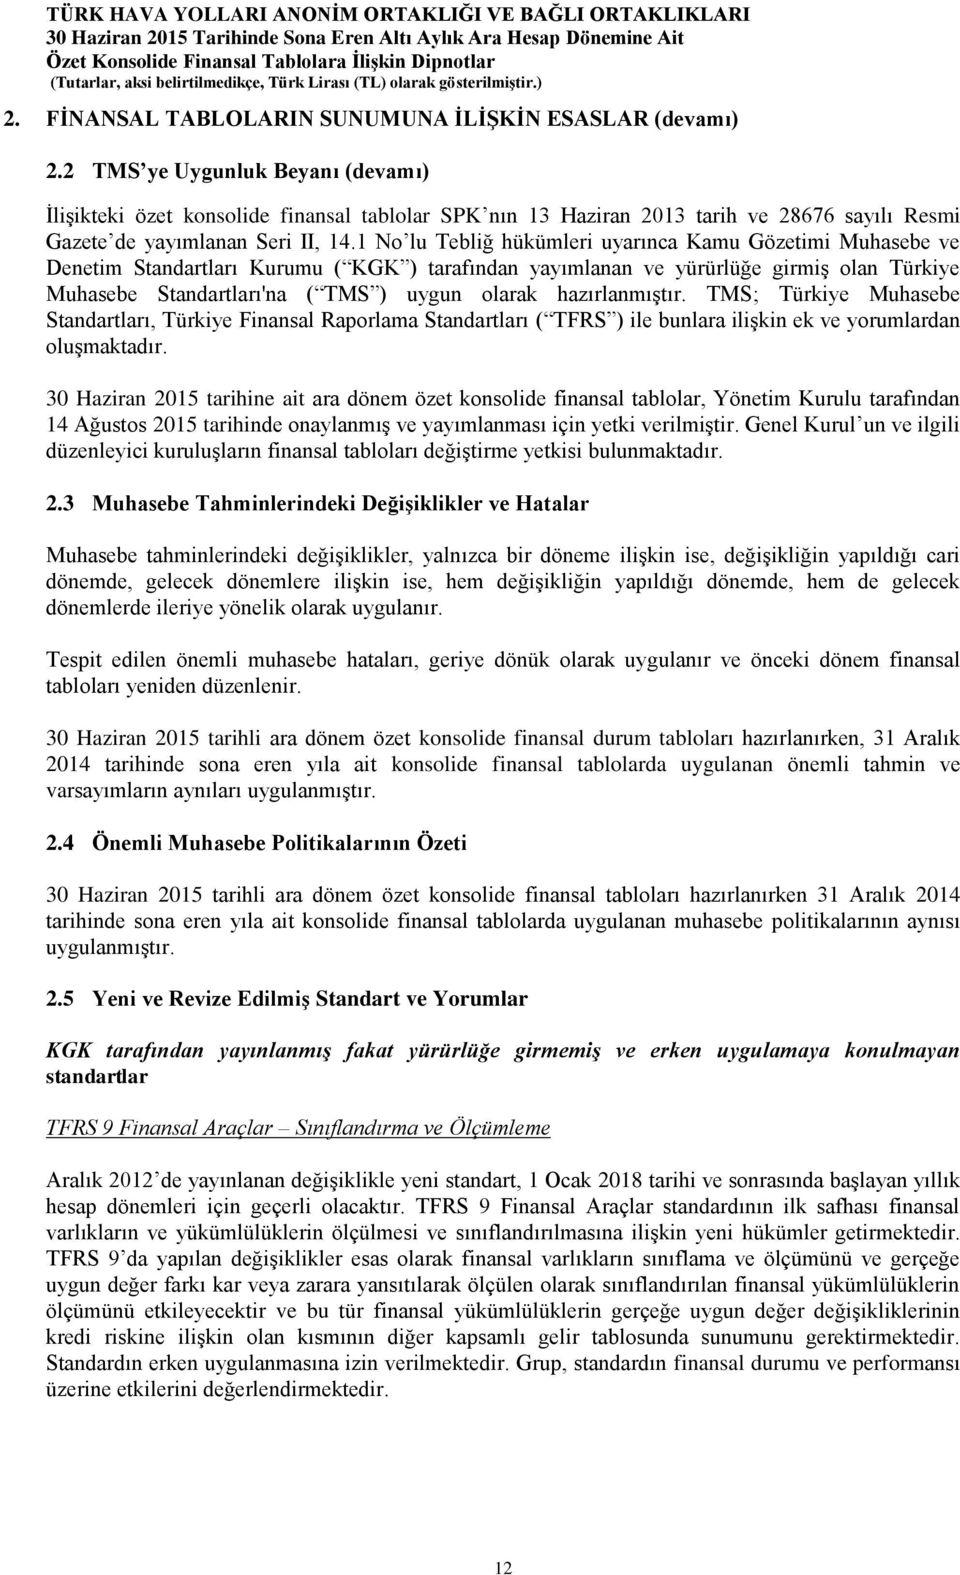 1 No lu Tebliğ hükümleri uyarınca Kamu Gözetimi Muhasebe ve Denetim Standartları Kurumu ( KGK ) tarafından yayımlanan ve yürürlüğe girmiş olan Türkiye Muhasebe Standartları'na ( TMS ) uygun olarak